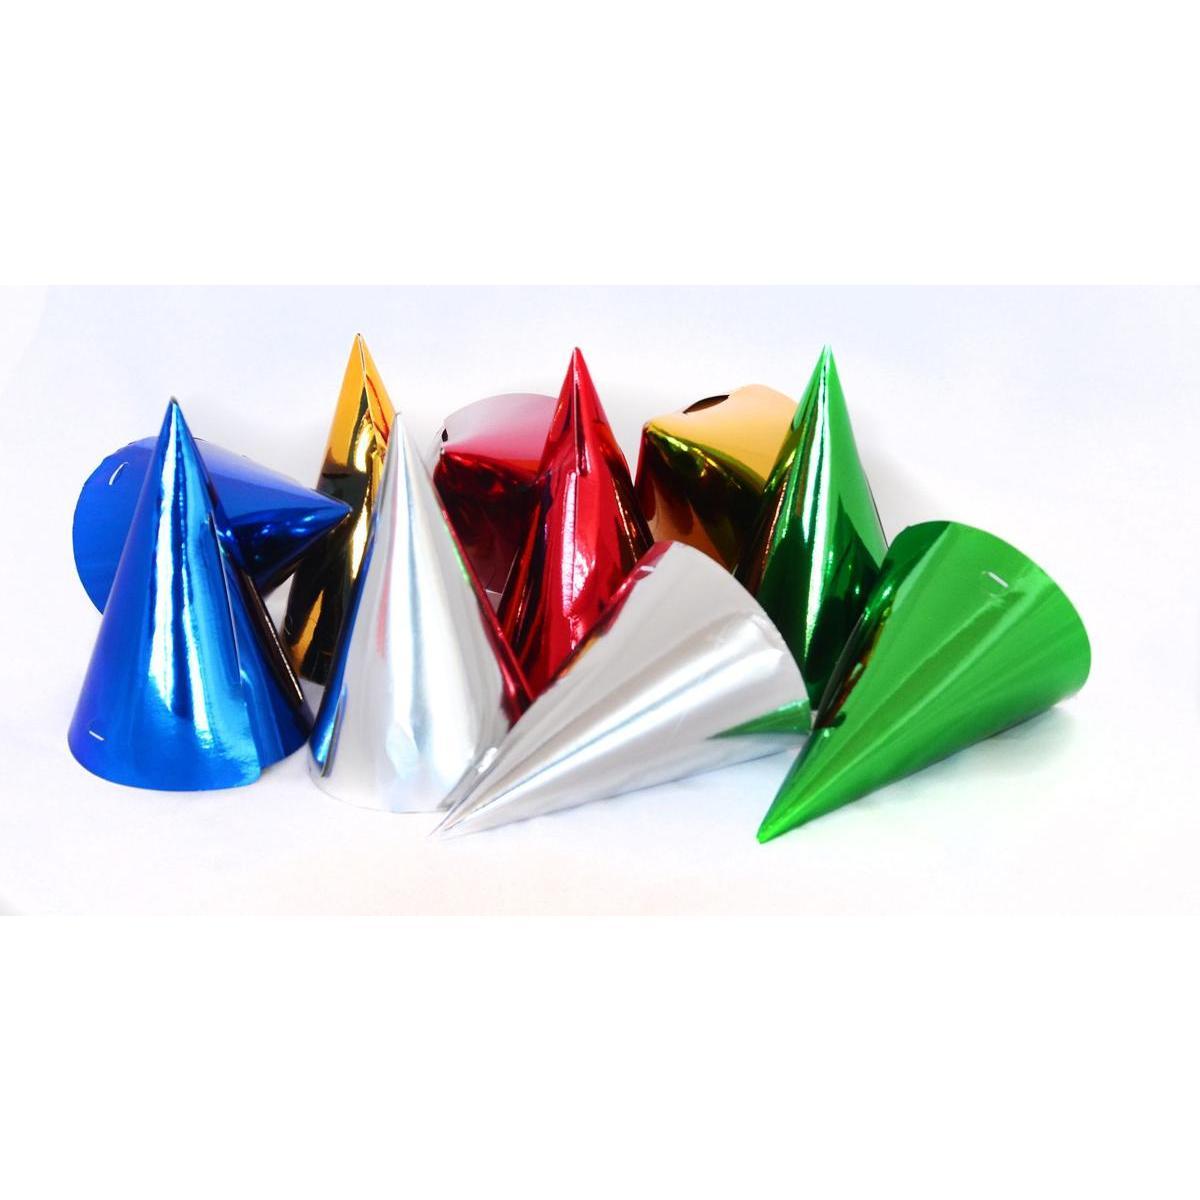 10 chapeaux pointus festifs - H 16 cm - Or, rouge, vert, argent, bleu